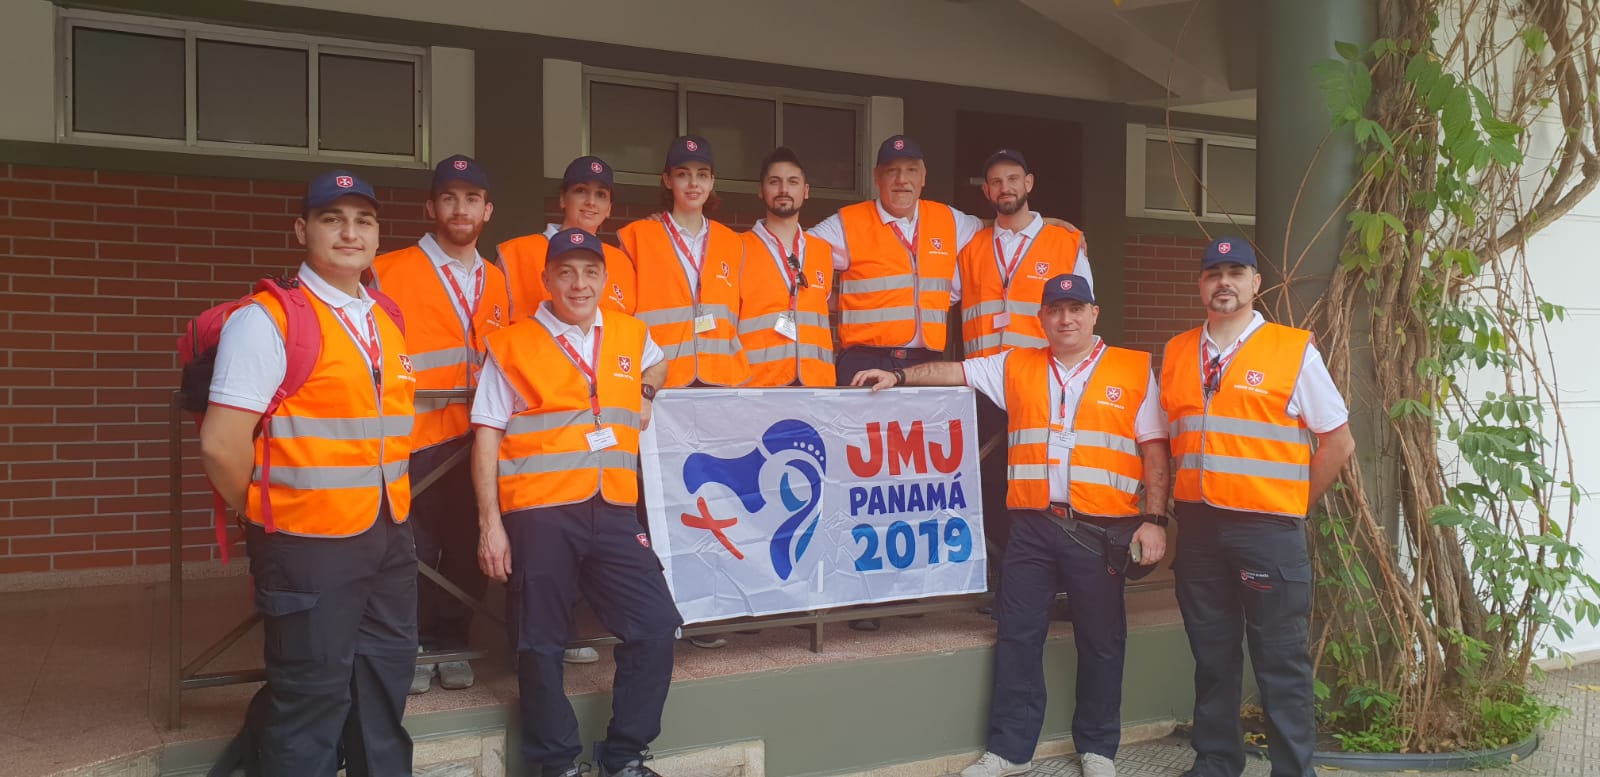 Giornata Mondiale Gioventù: 130 volontari dell’Ordine di Malta a Panama. Saranno impegnati in attività di assistenza sanitaria al fianco delle autorità locali e vaticane